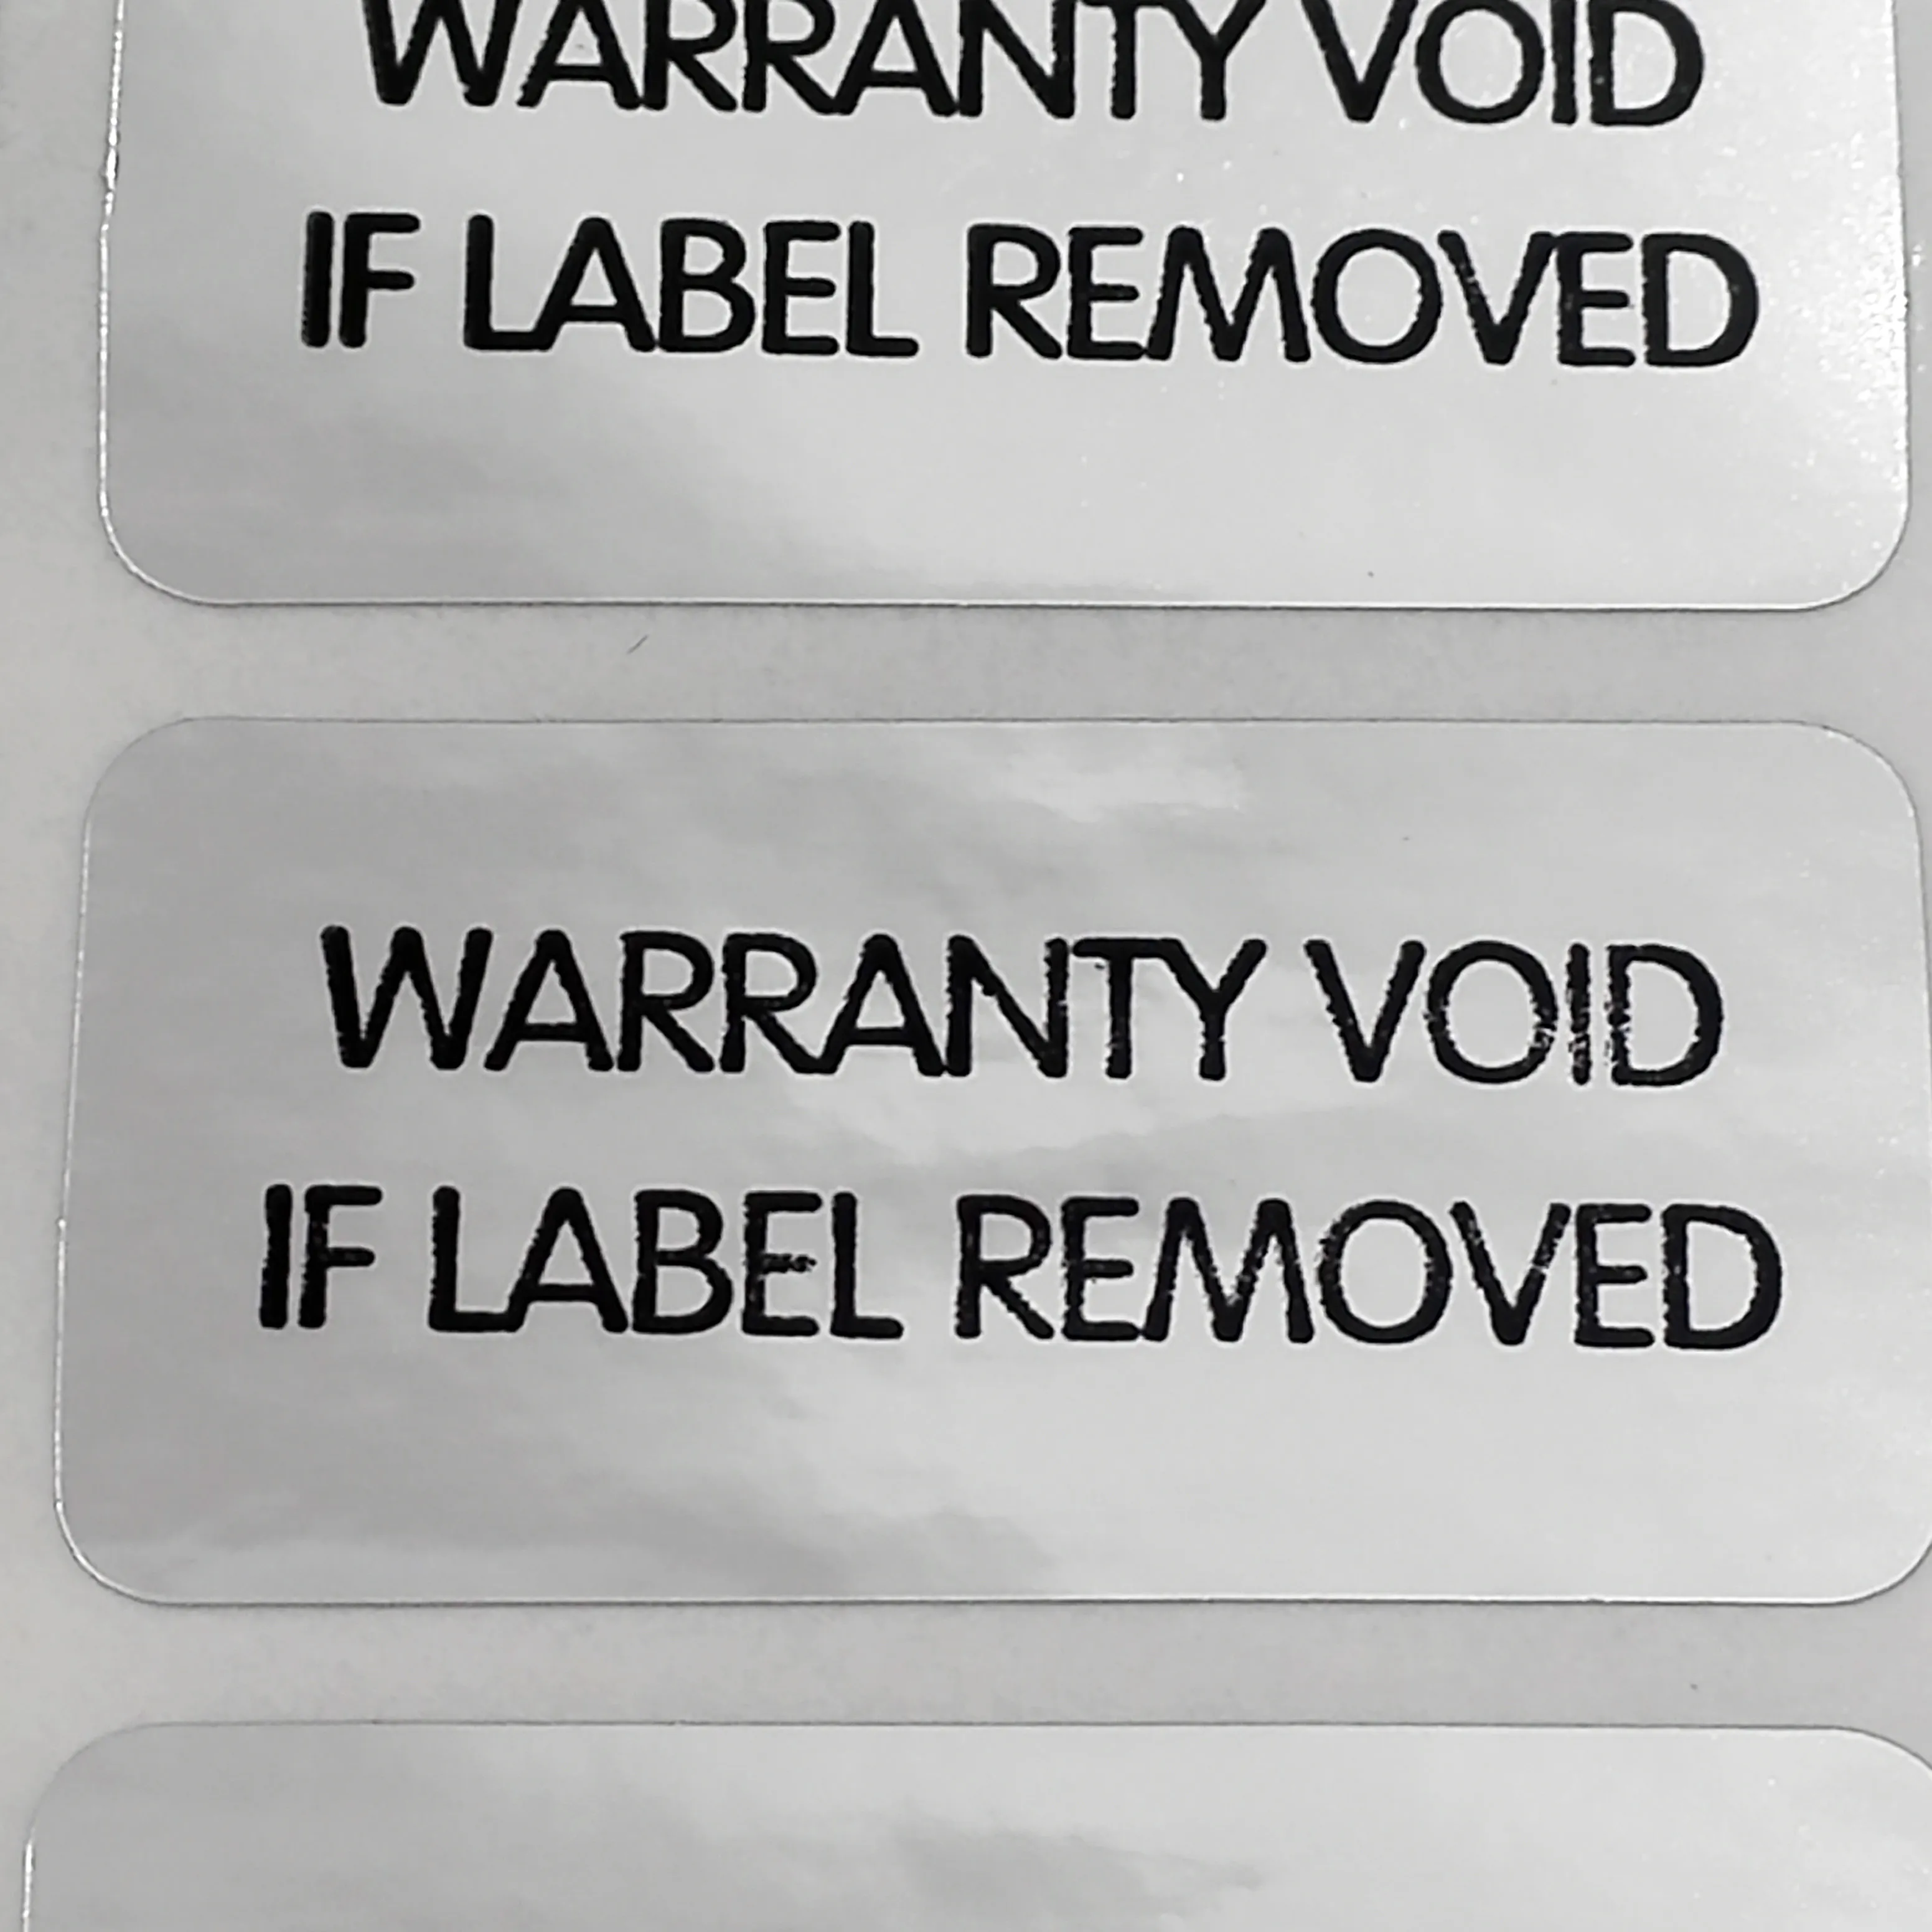 1200 Stück, 3 x 1,5 cm, Garantie erlischt, wenn das Etikett entfernt wird, manipulationssicherer Vinyl-Verpackungsetikettenaufkleber für die Sicherheit, Artikel-Nr. V32312P